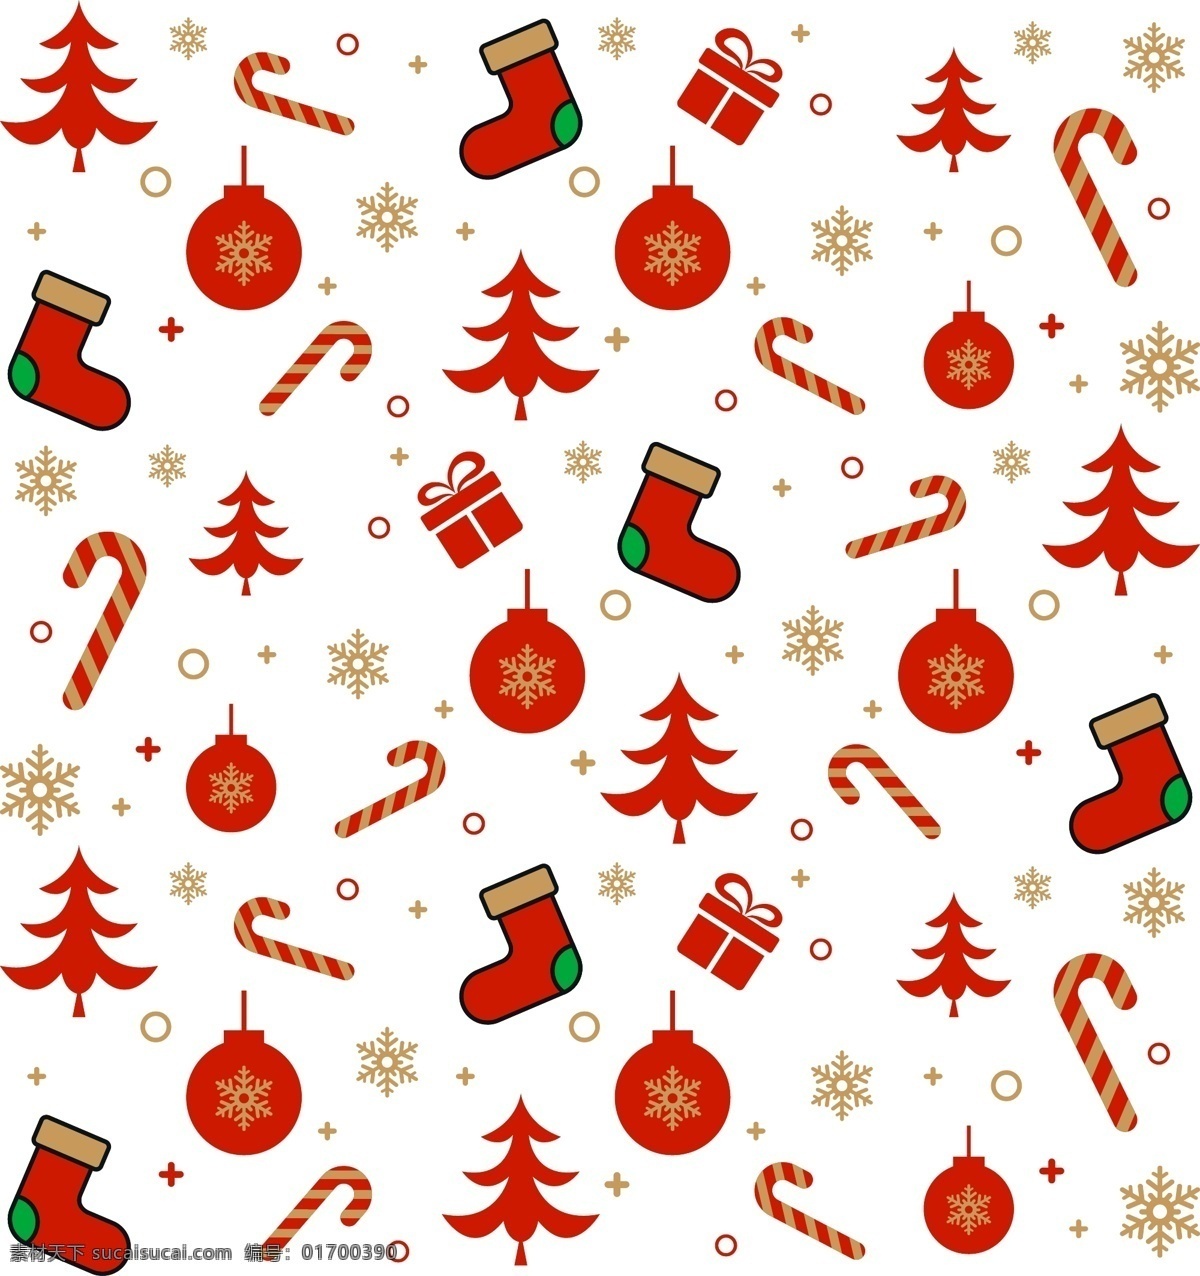 矢量 精美 圣诞节 底纹 圣诞树 礼物 花灯 长筒袜 矢量雪花 手杖 魔法棒 底纹边框 其他素材